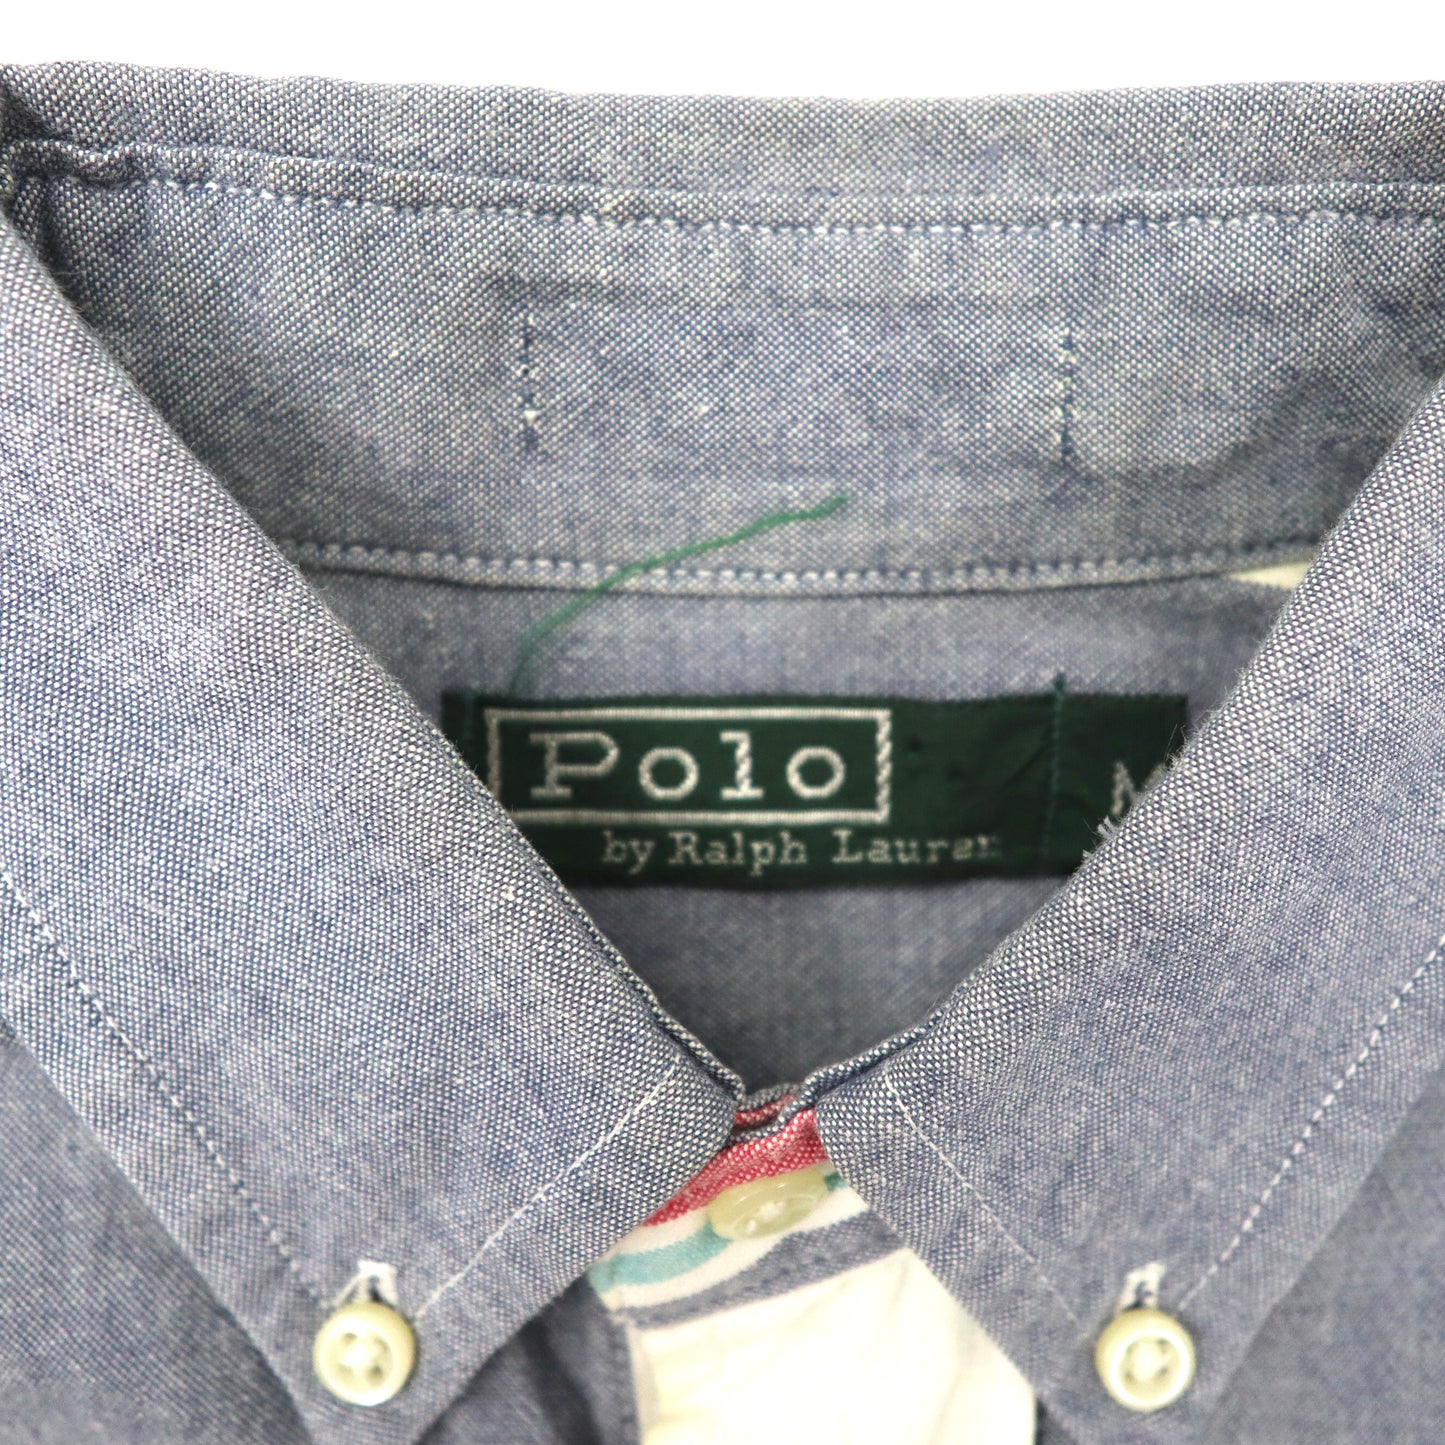 Polo by Ralph Lauren 半袖ボタンダウンシャツ M マルチストライプ コットン スモールポニー刺繍